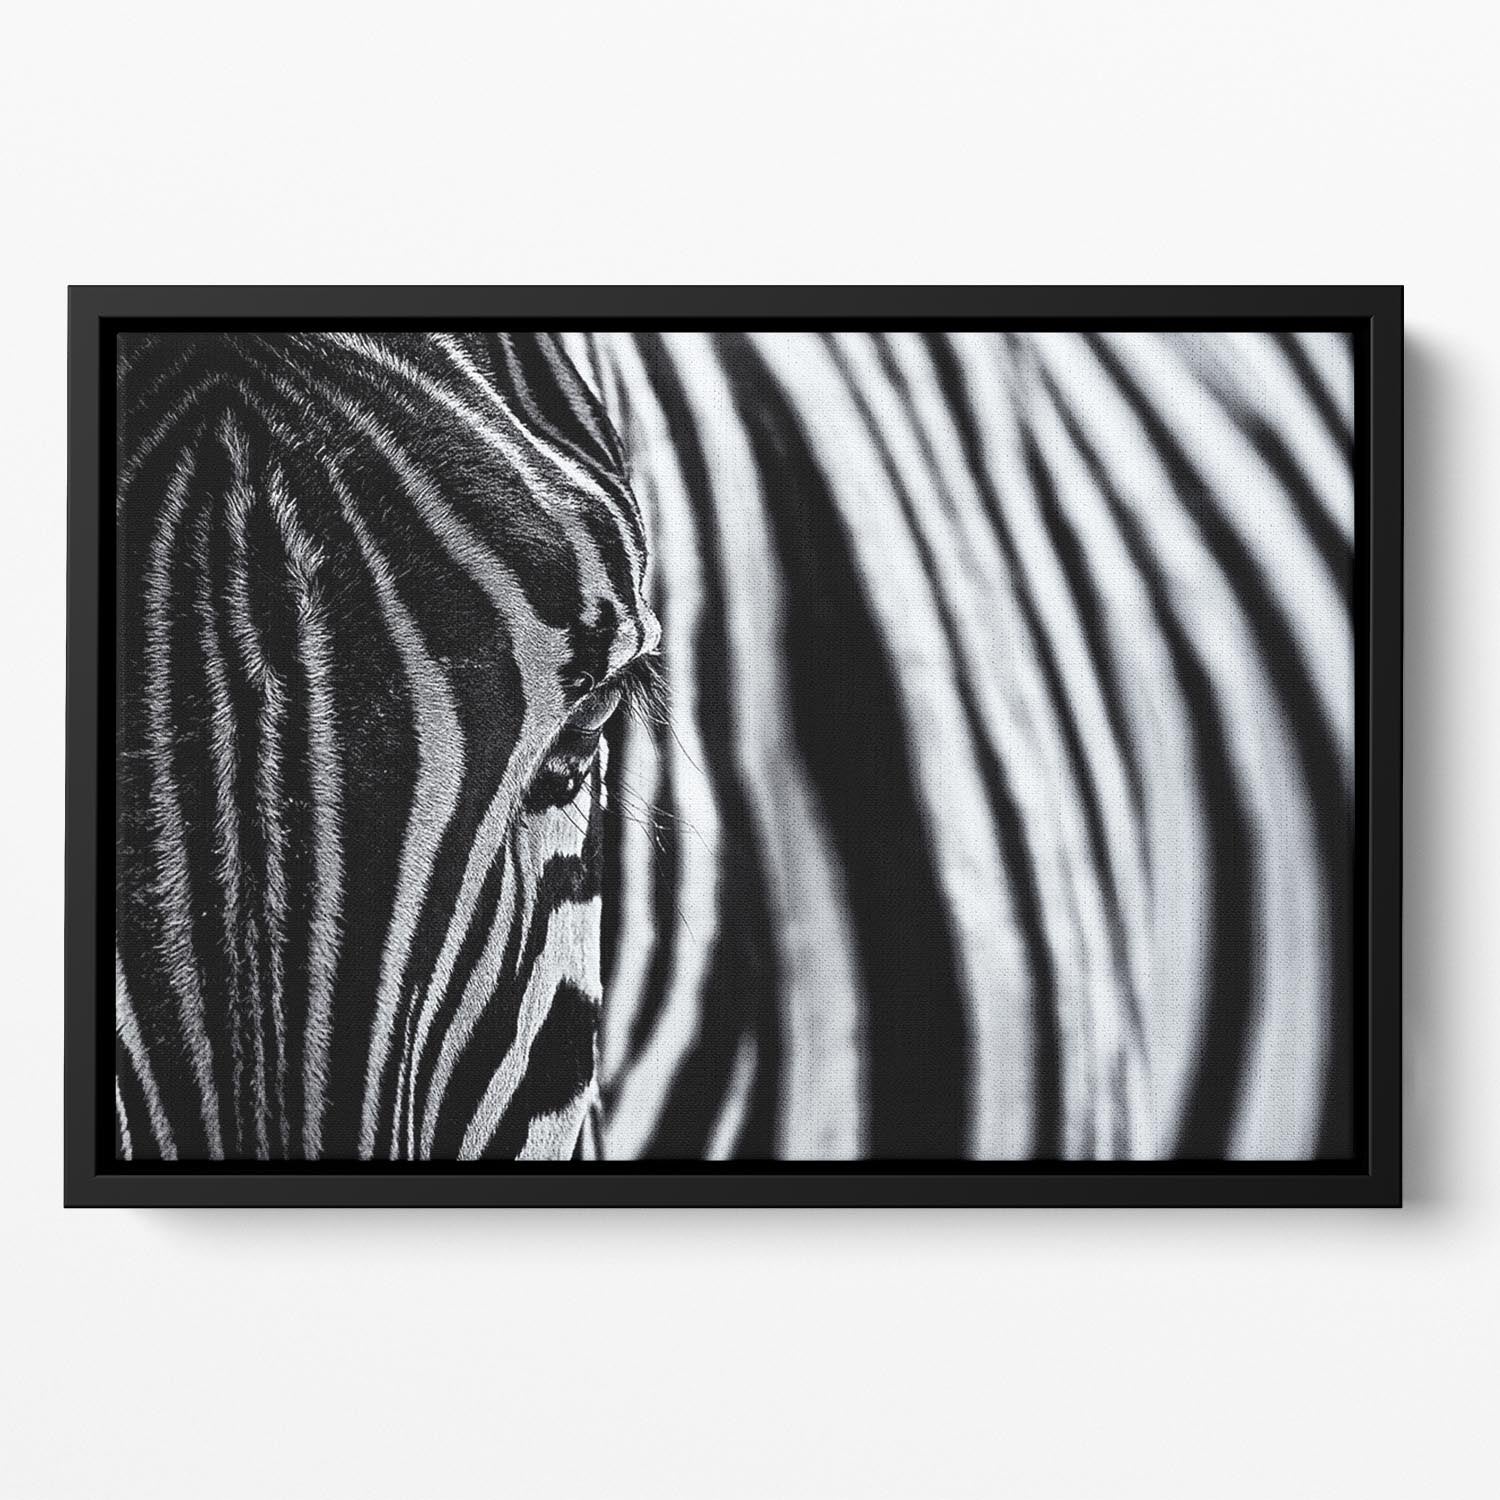 Zebra Close Up Floating Framed Canvas - Canvas Art Rocks - 2